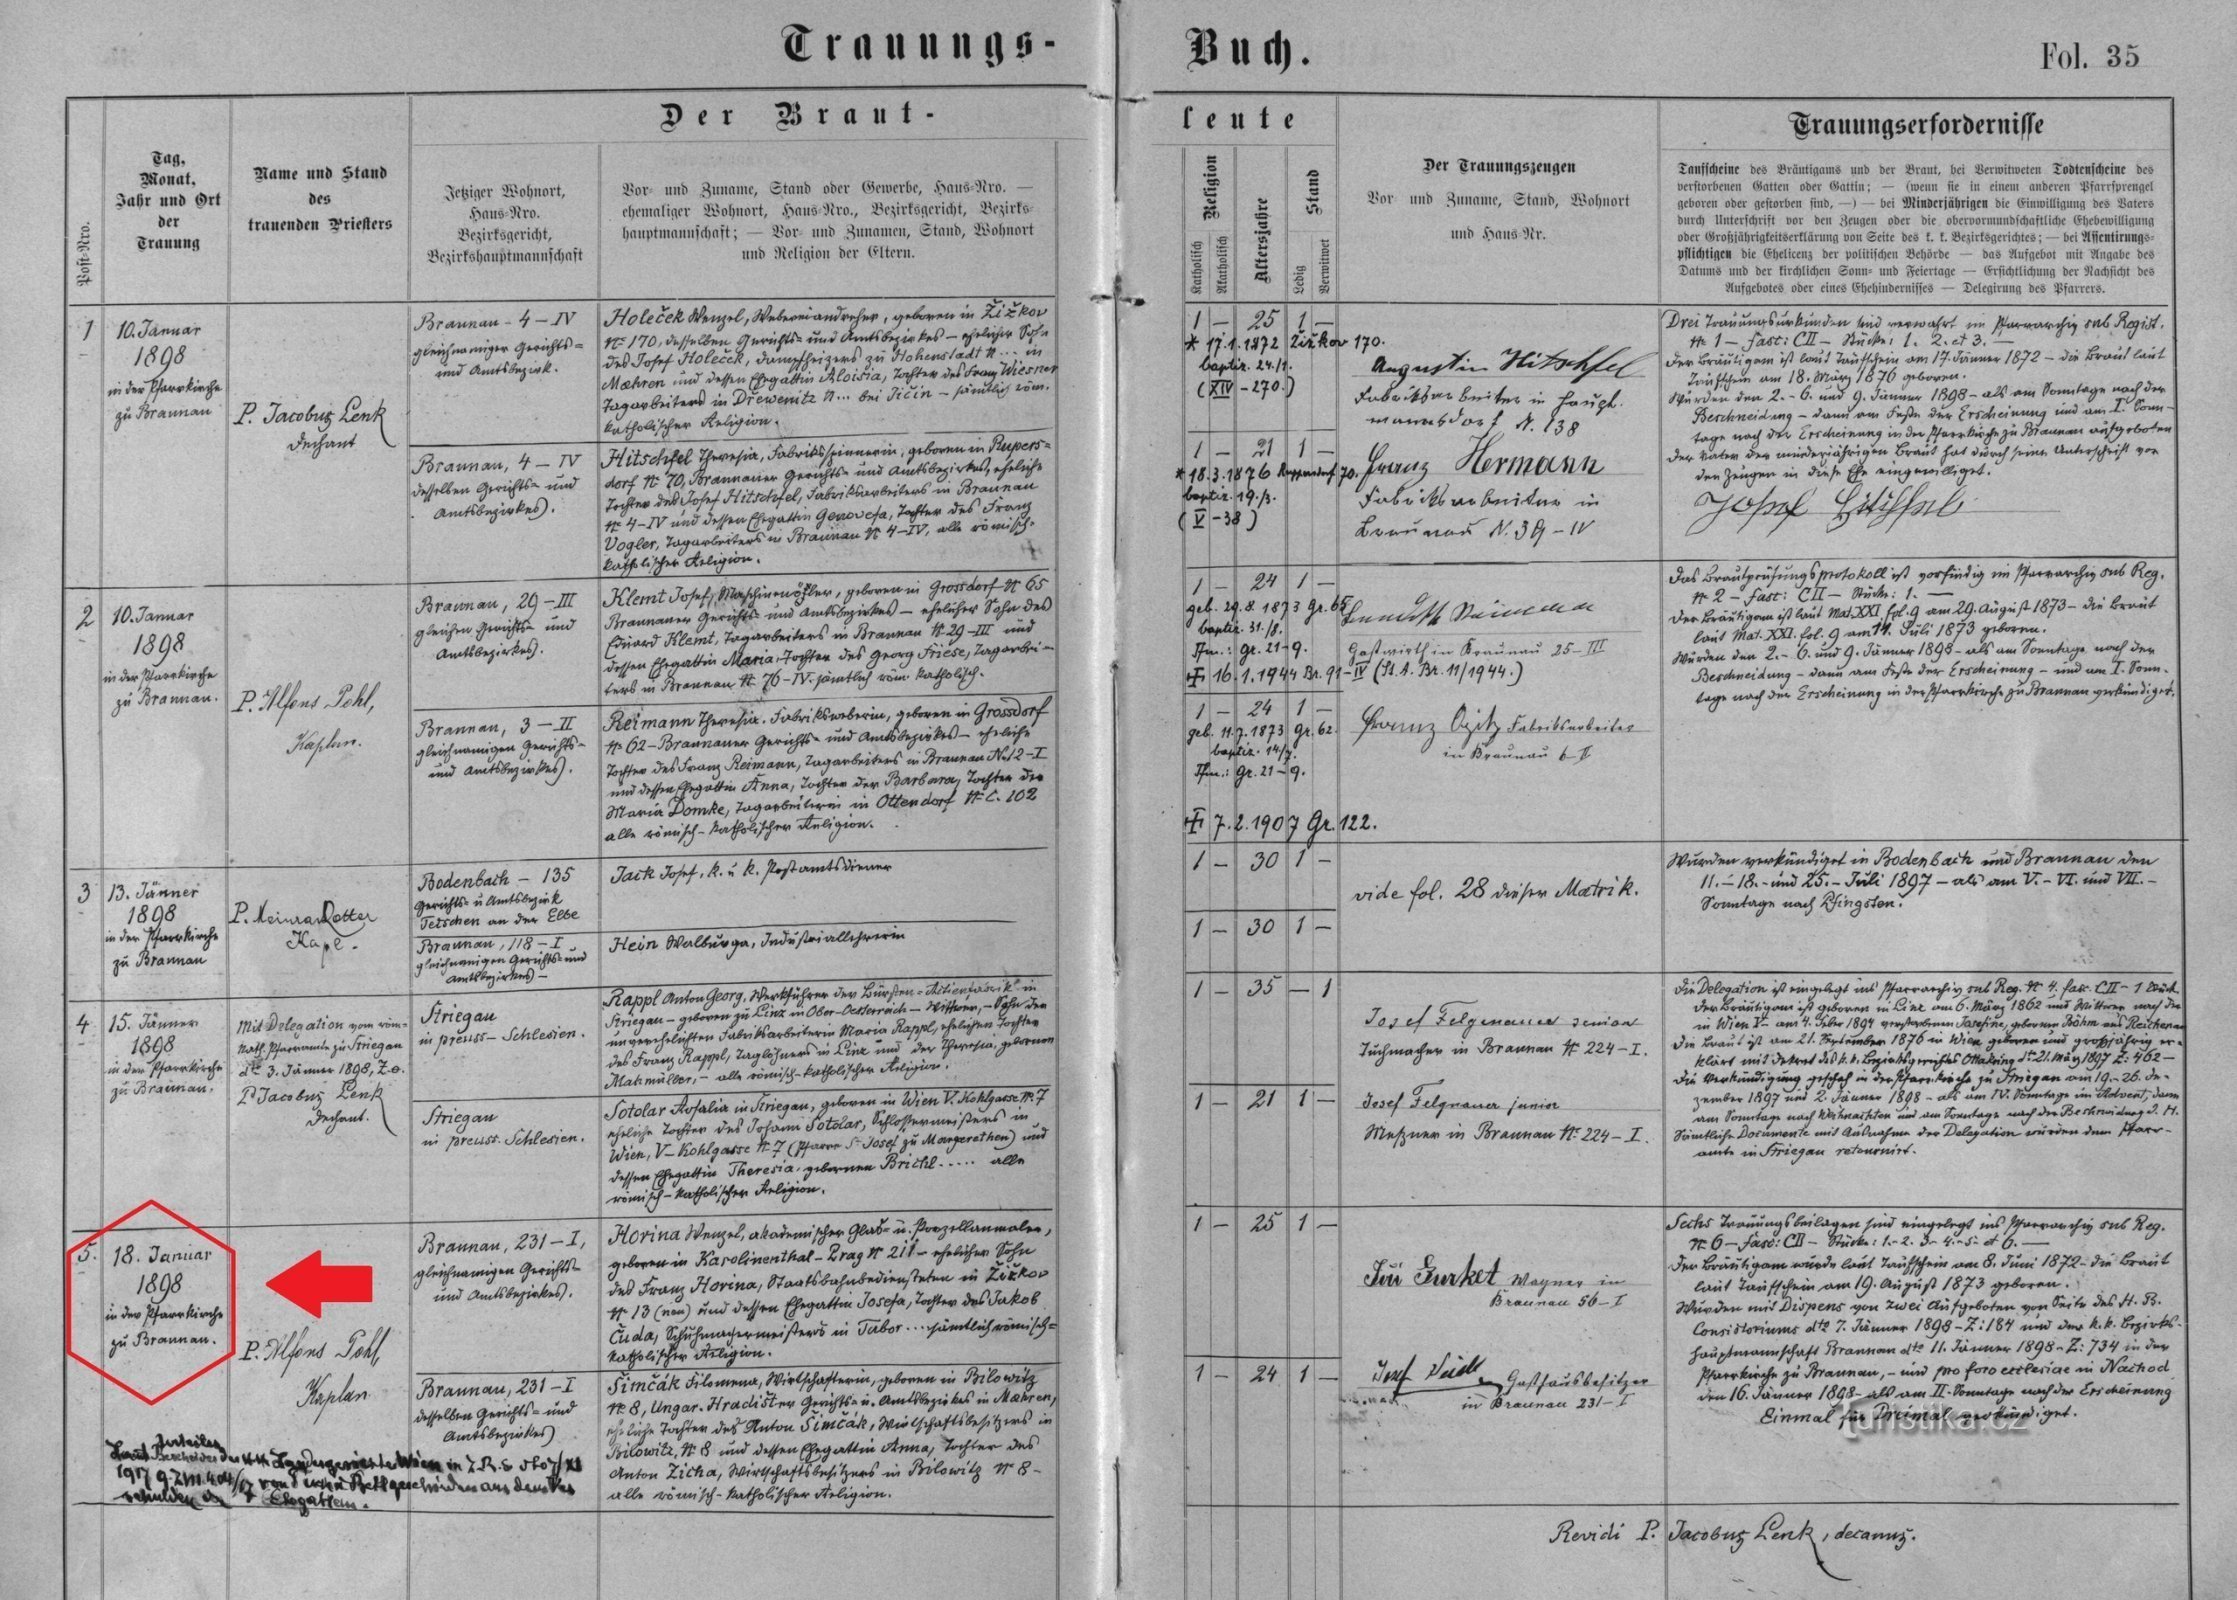 ヴァーツラフ・ホリナとフィロメーナ・シムチャコヴァの結婚記録